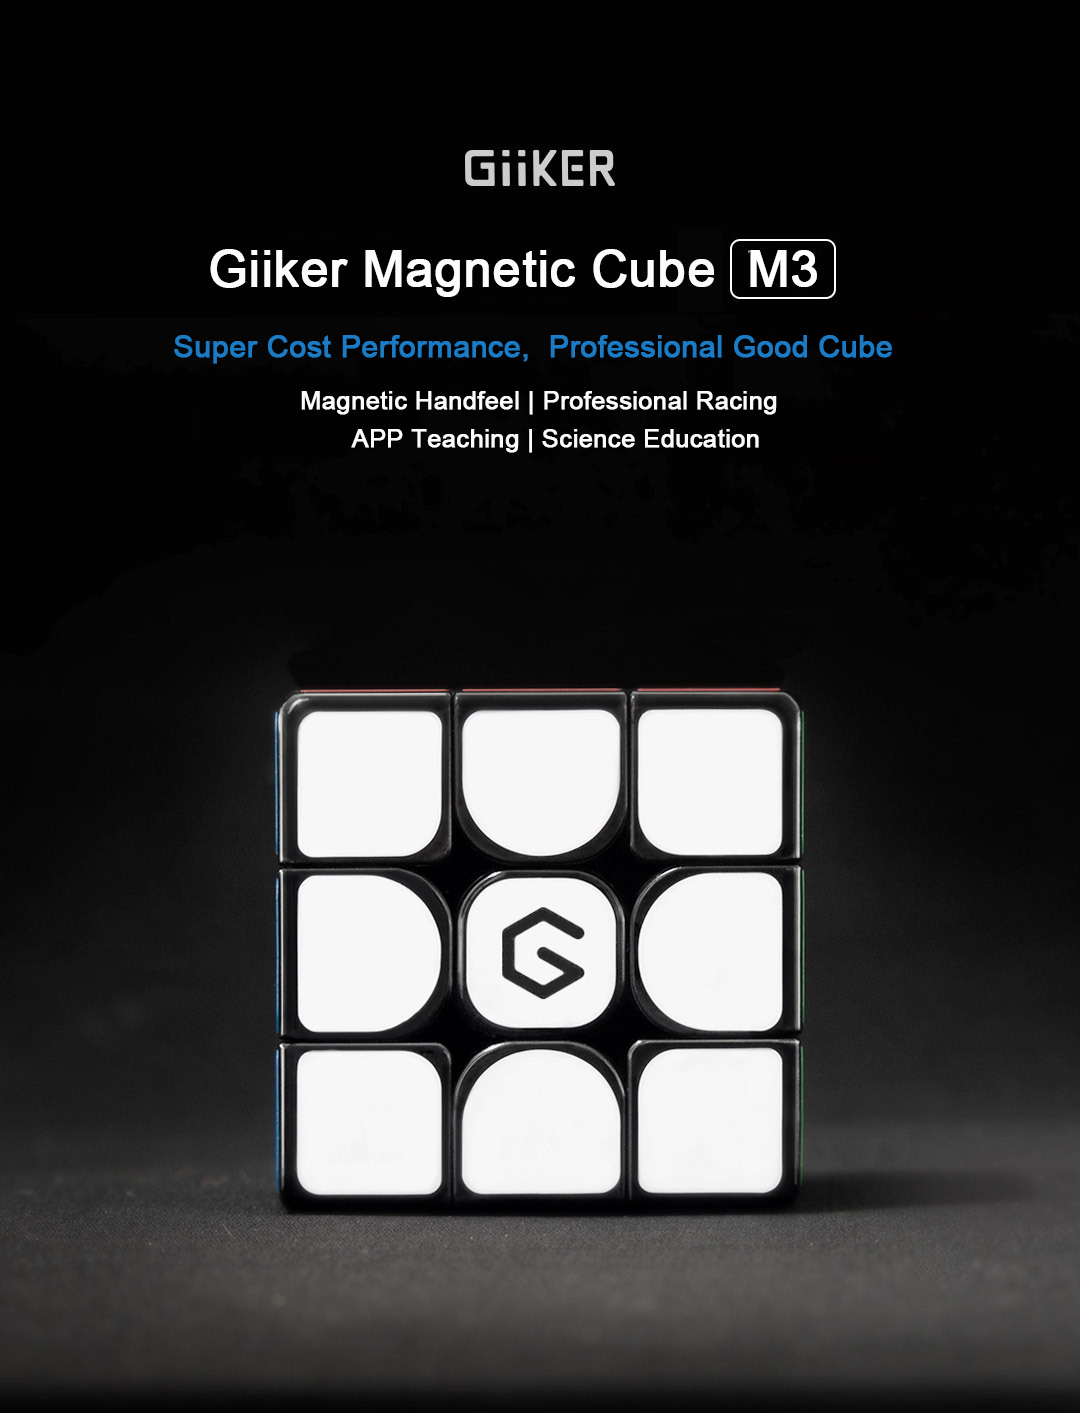 xiaomi giiker m3 magnetic rubiks cube